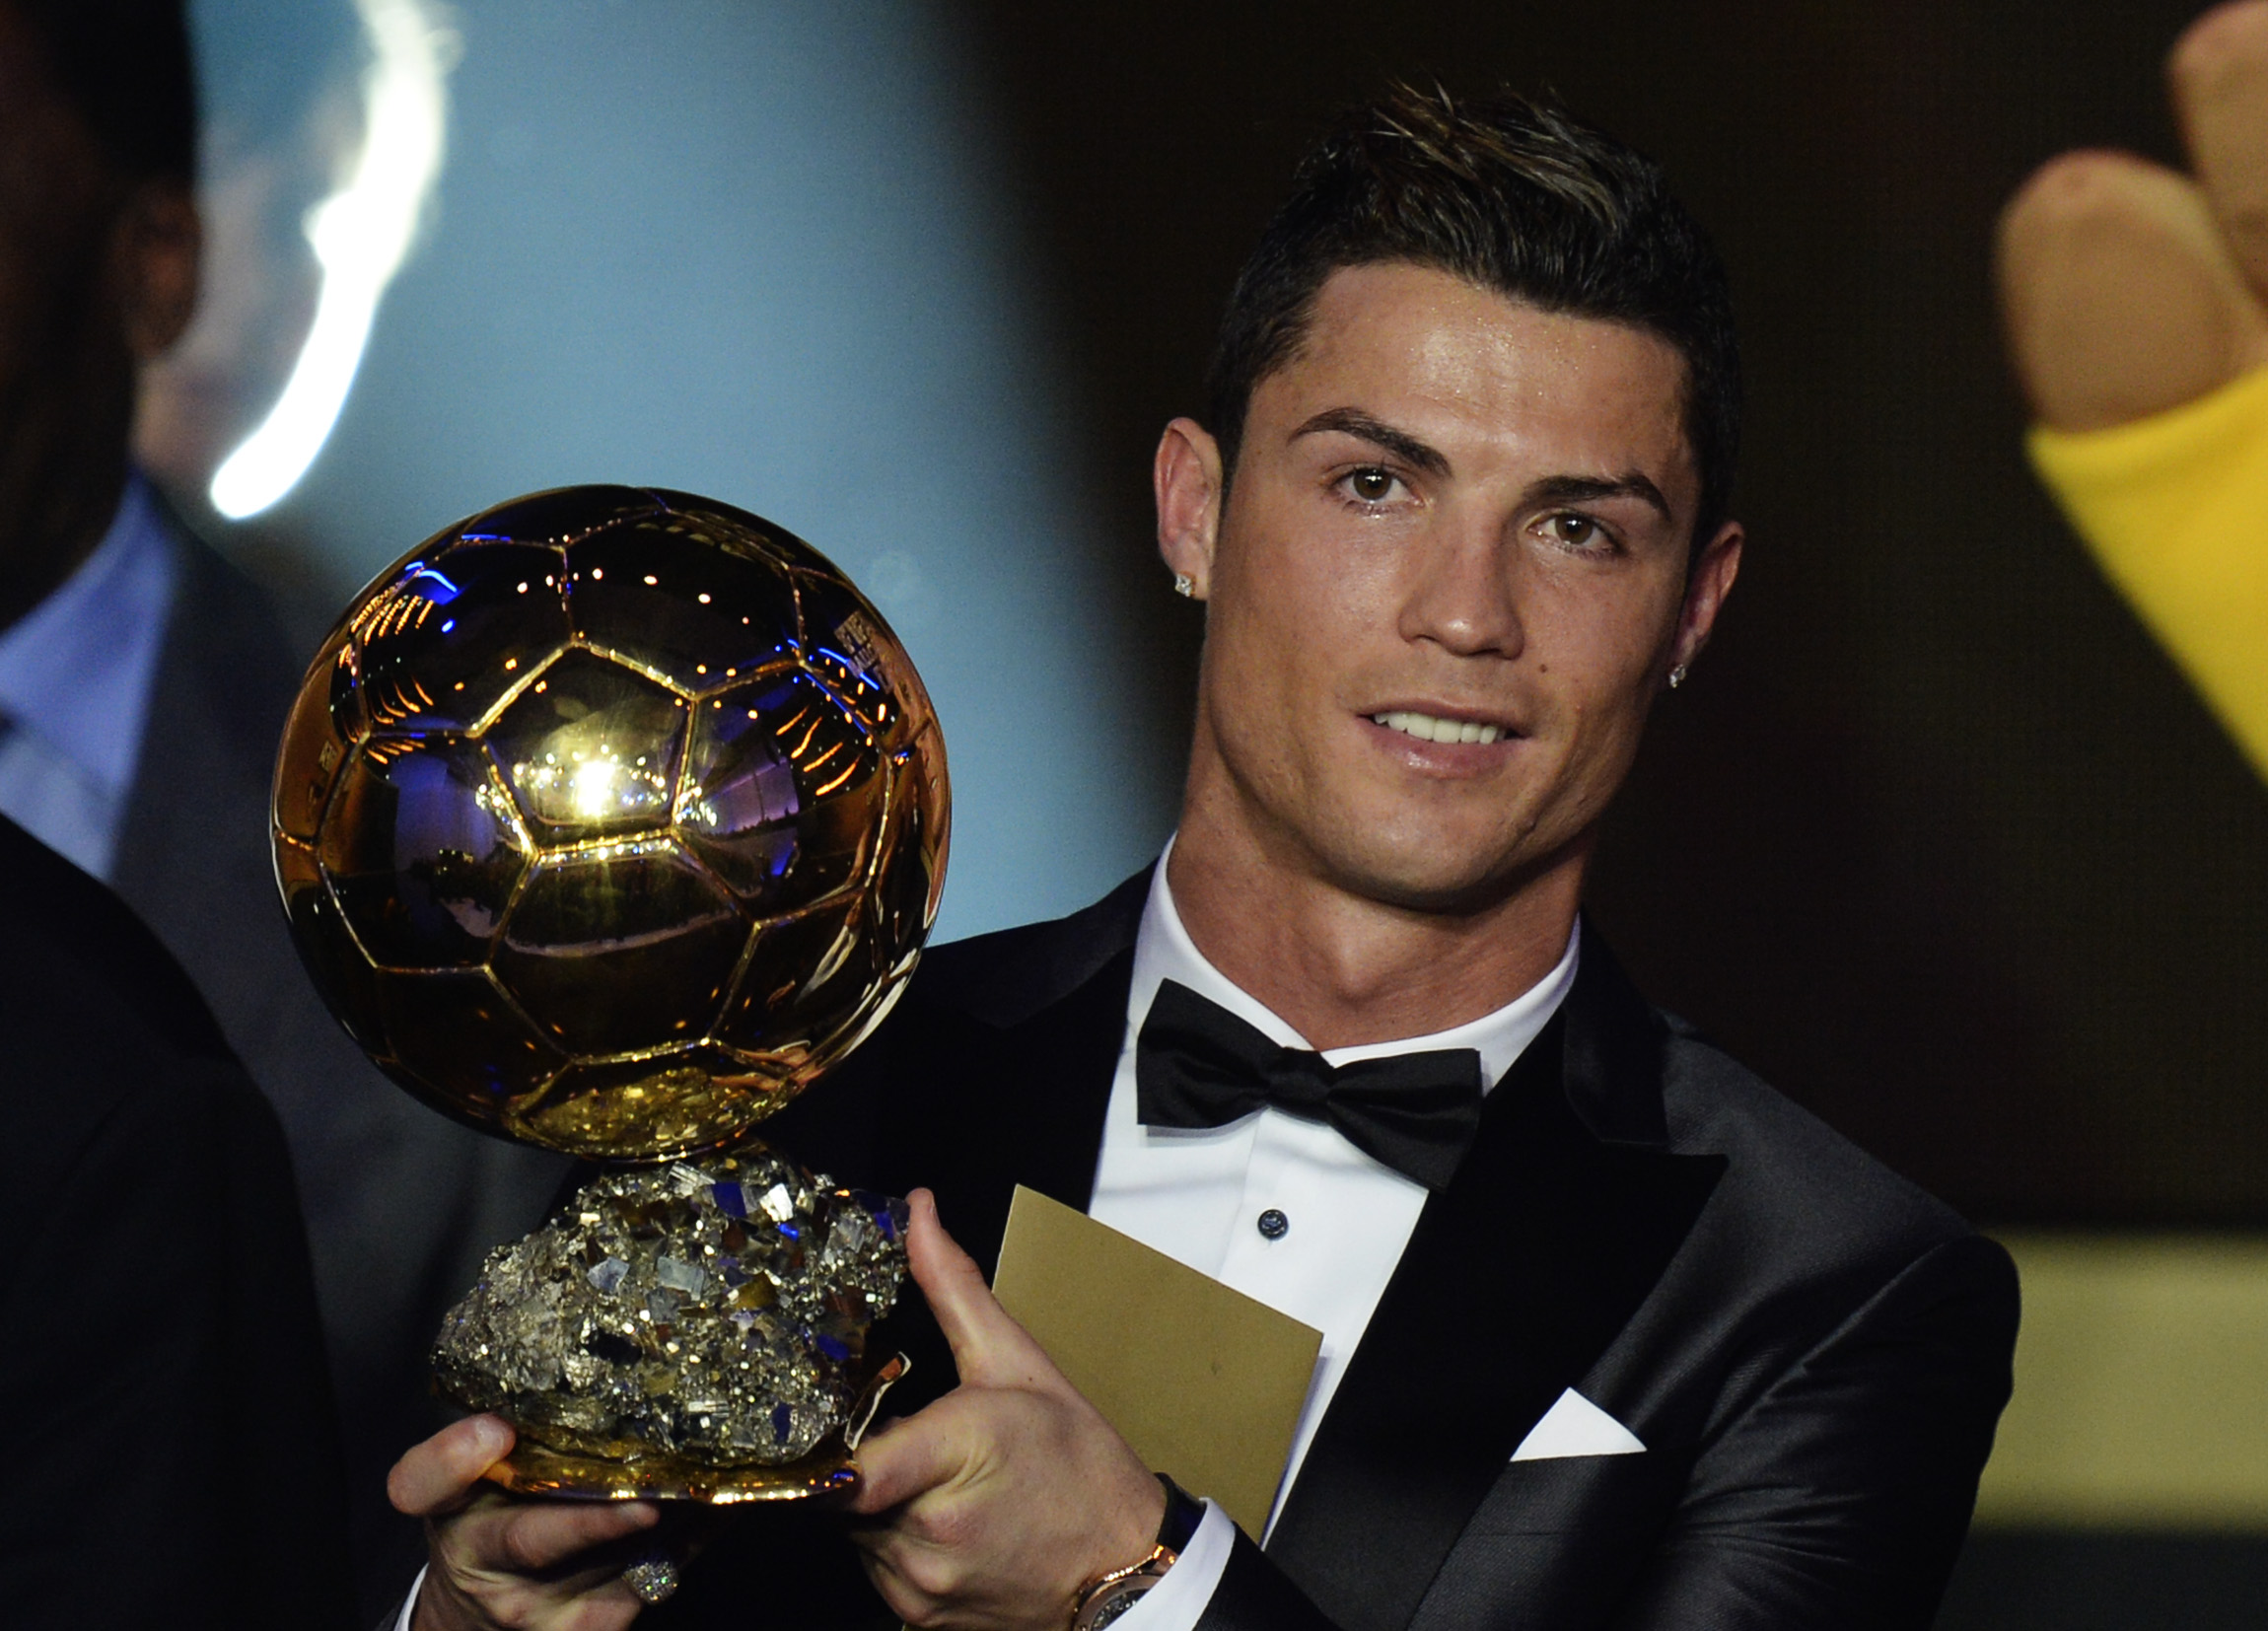 Il Pallone d'oro 2013 è Cristiano Ronaldo - IlGiornale.it